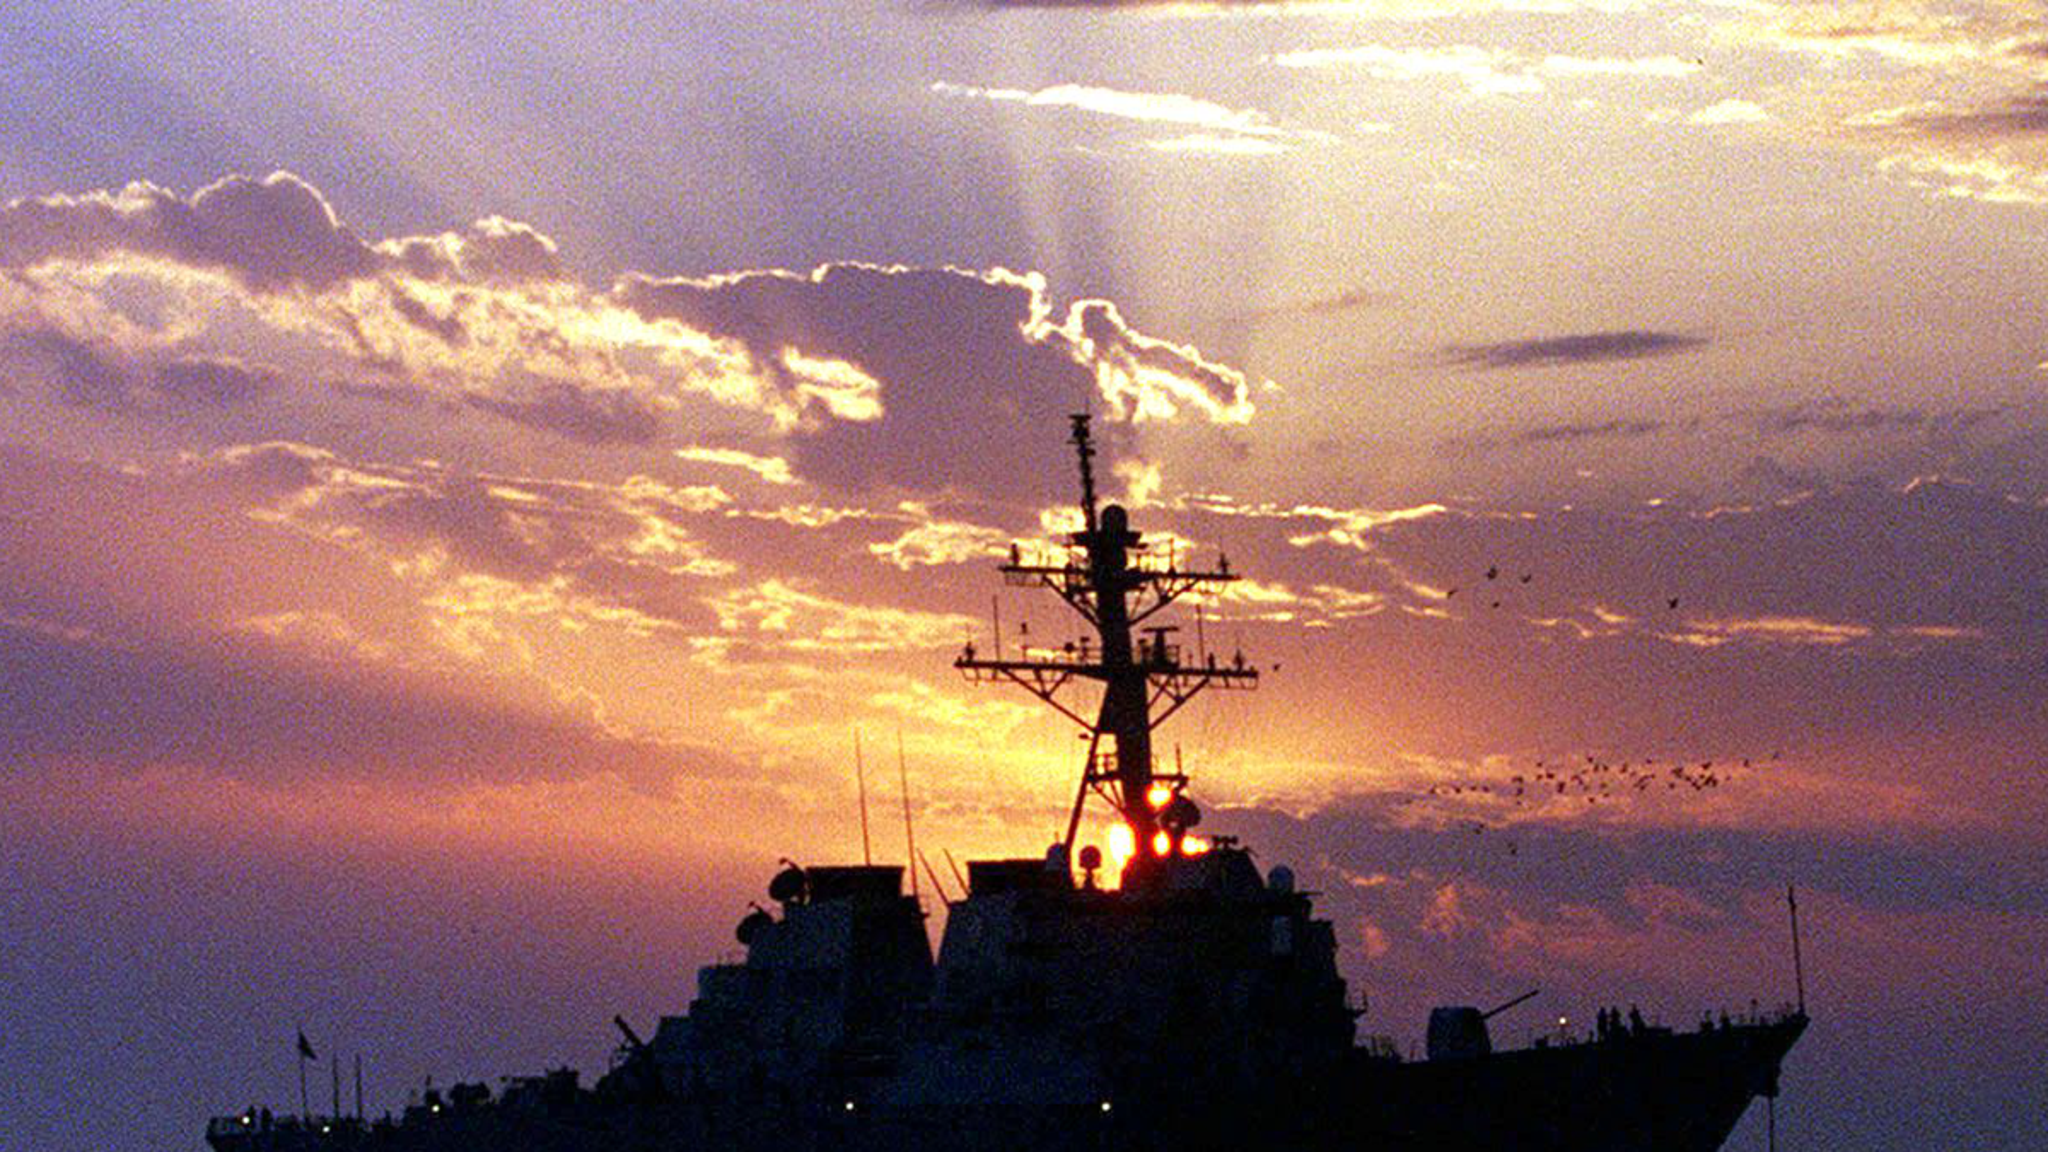 Un navire de guerre américain est attaqué en mer Rouge, les rebelles du Yémen en sont responsables